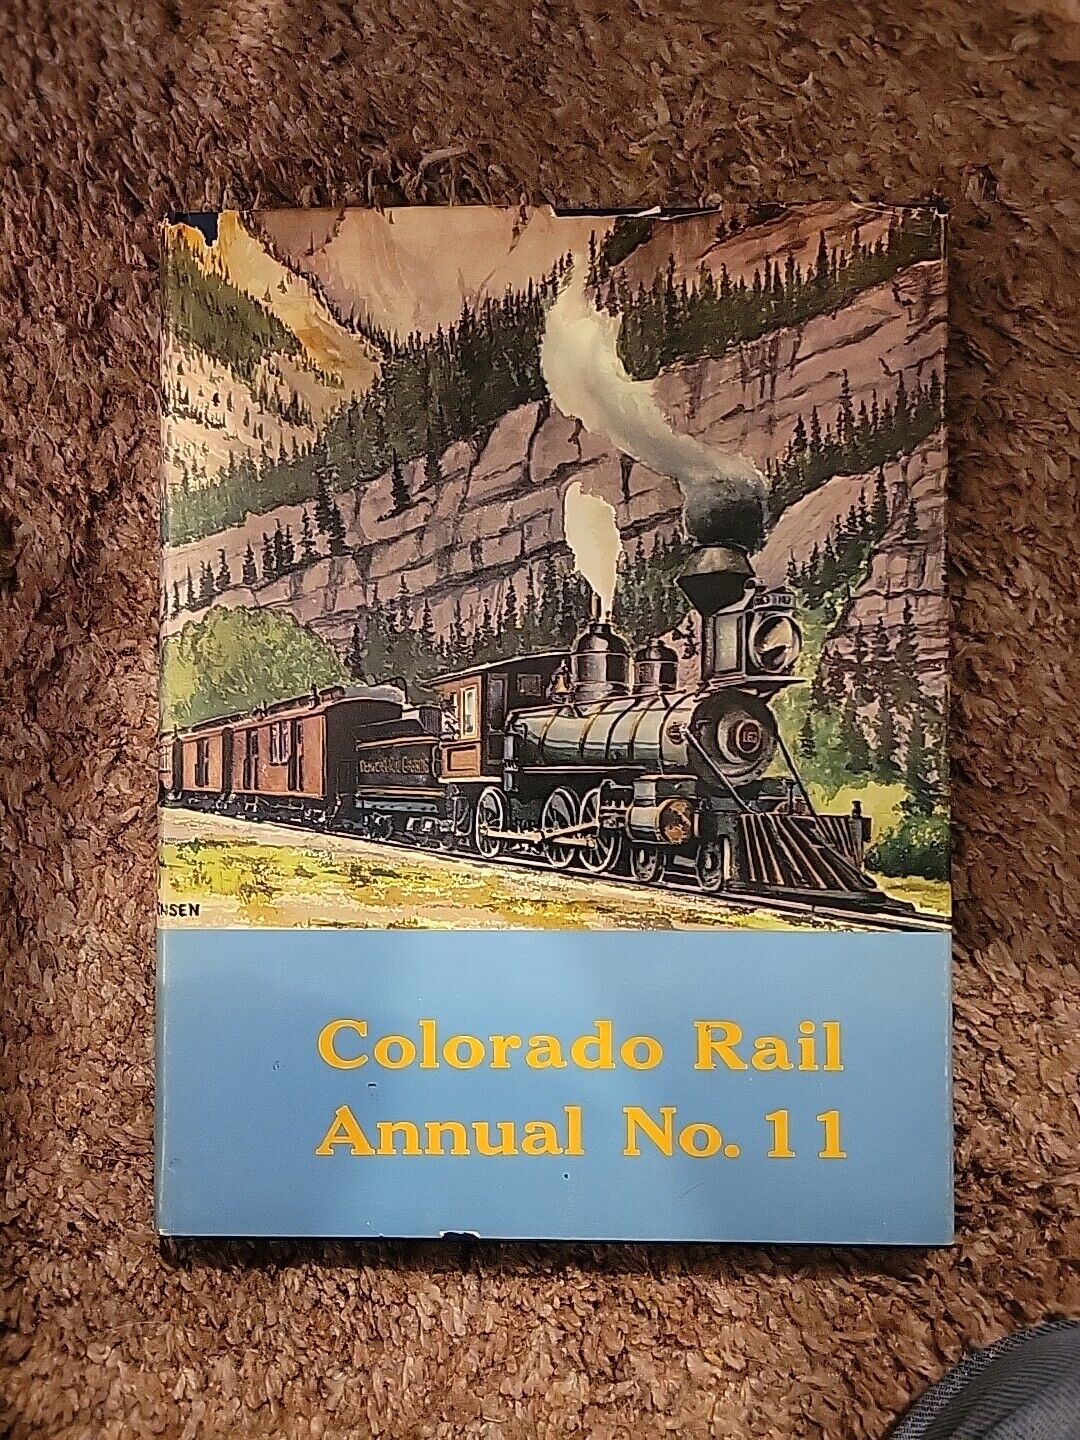 Colorado Rail Annual No. 11 by Colorado Railroad Museum-1973 Hard Copy in Jacket